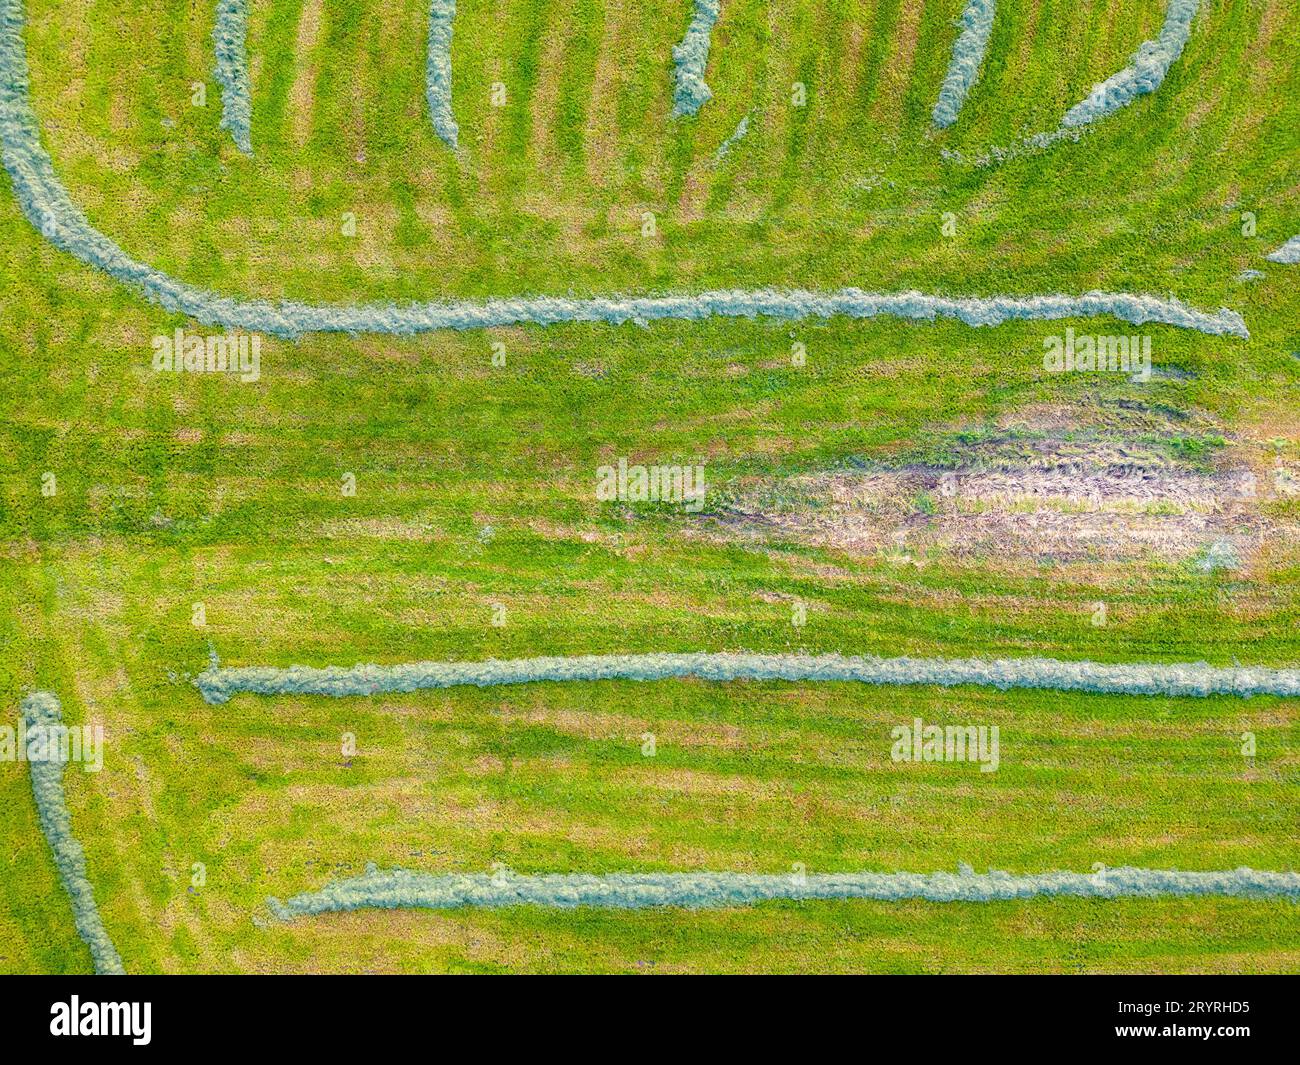 Motifs colorés dans les champs de culture aux terres agricoles, vue aérienne, photo drone. Formes géométriques abstraites des parcelles agricoles de dif Banque D'Images